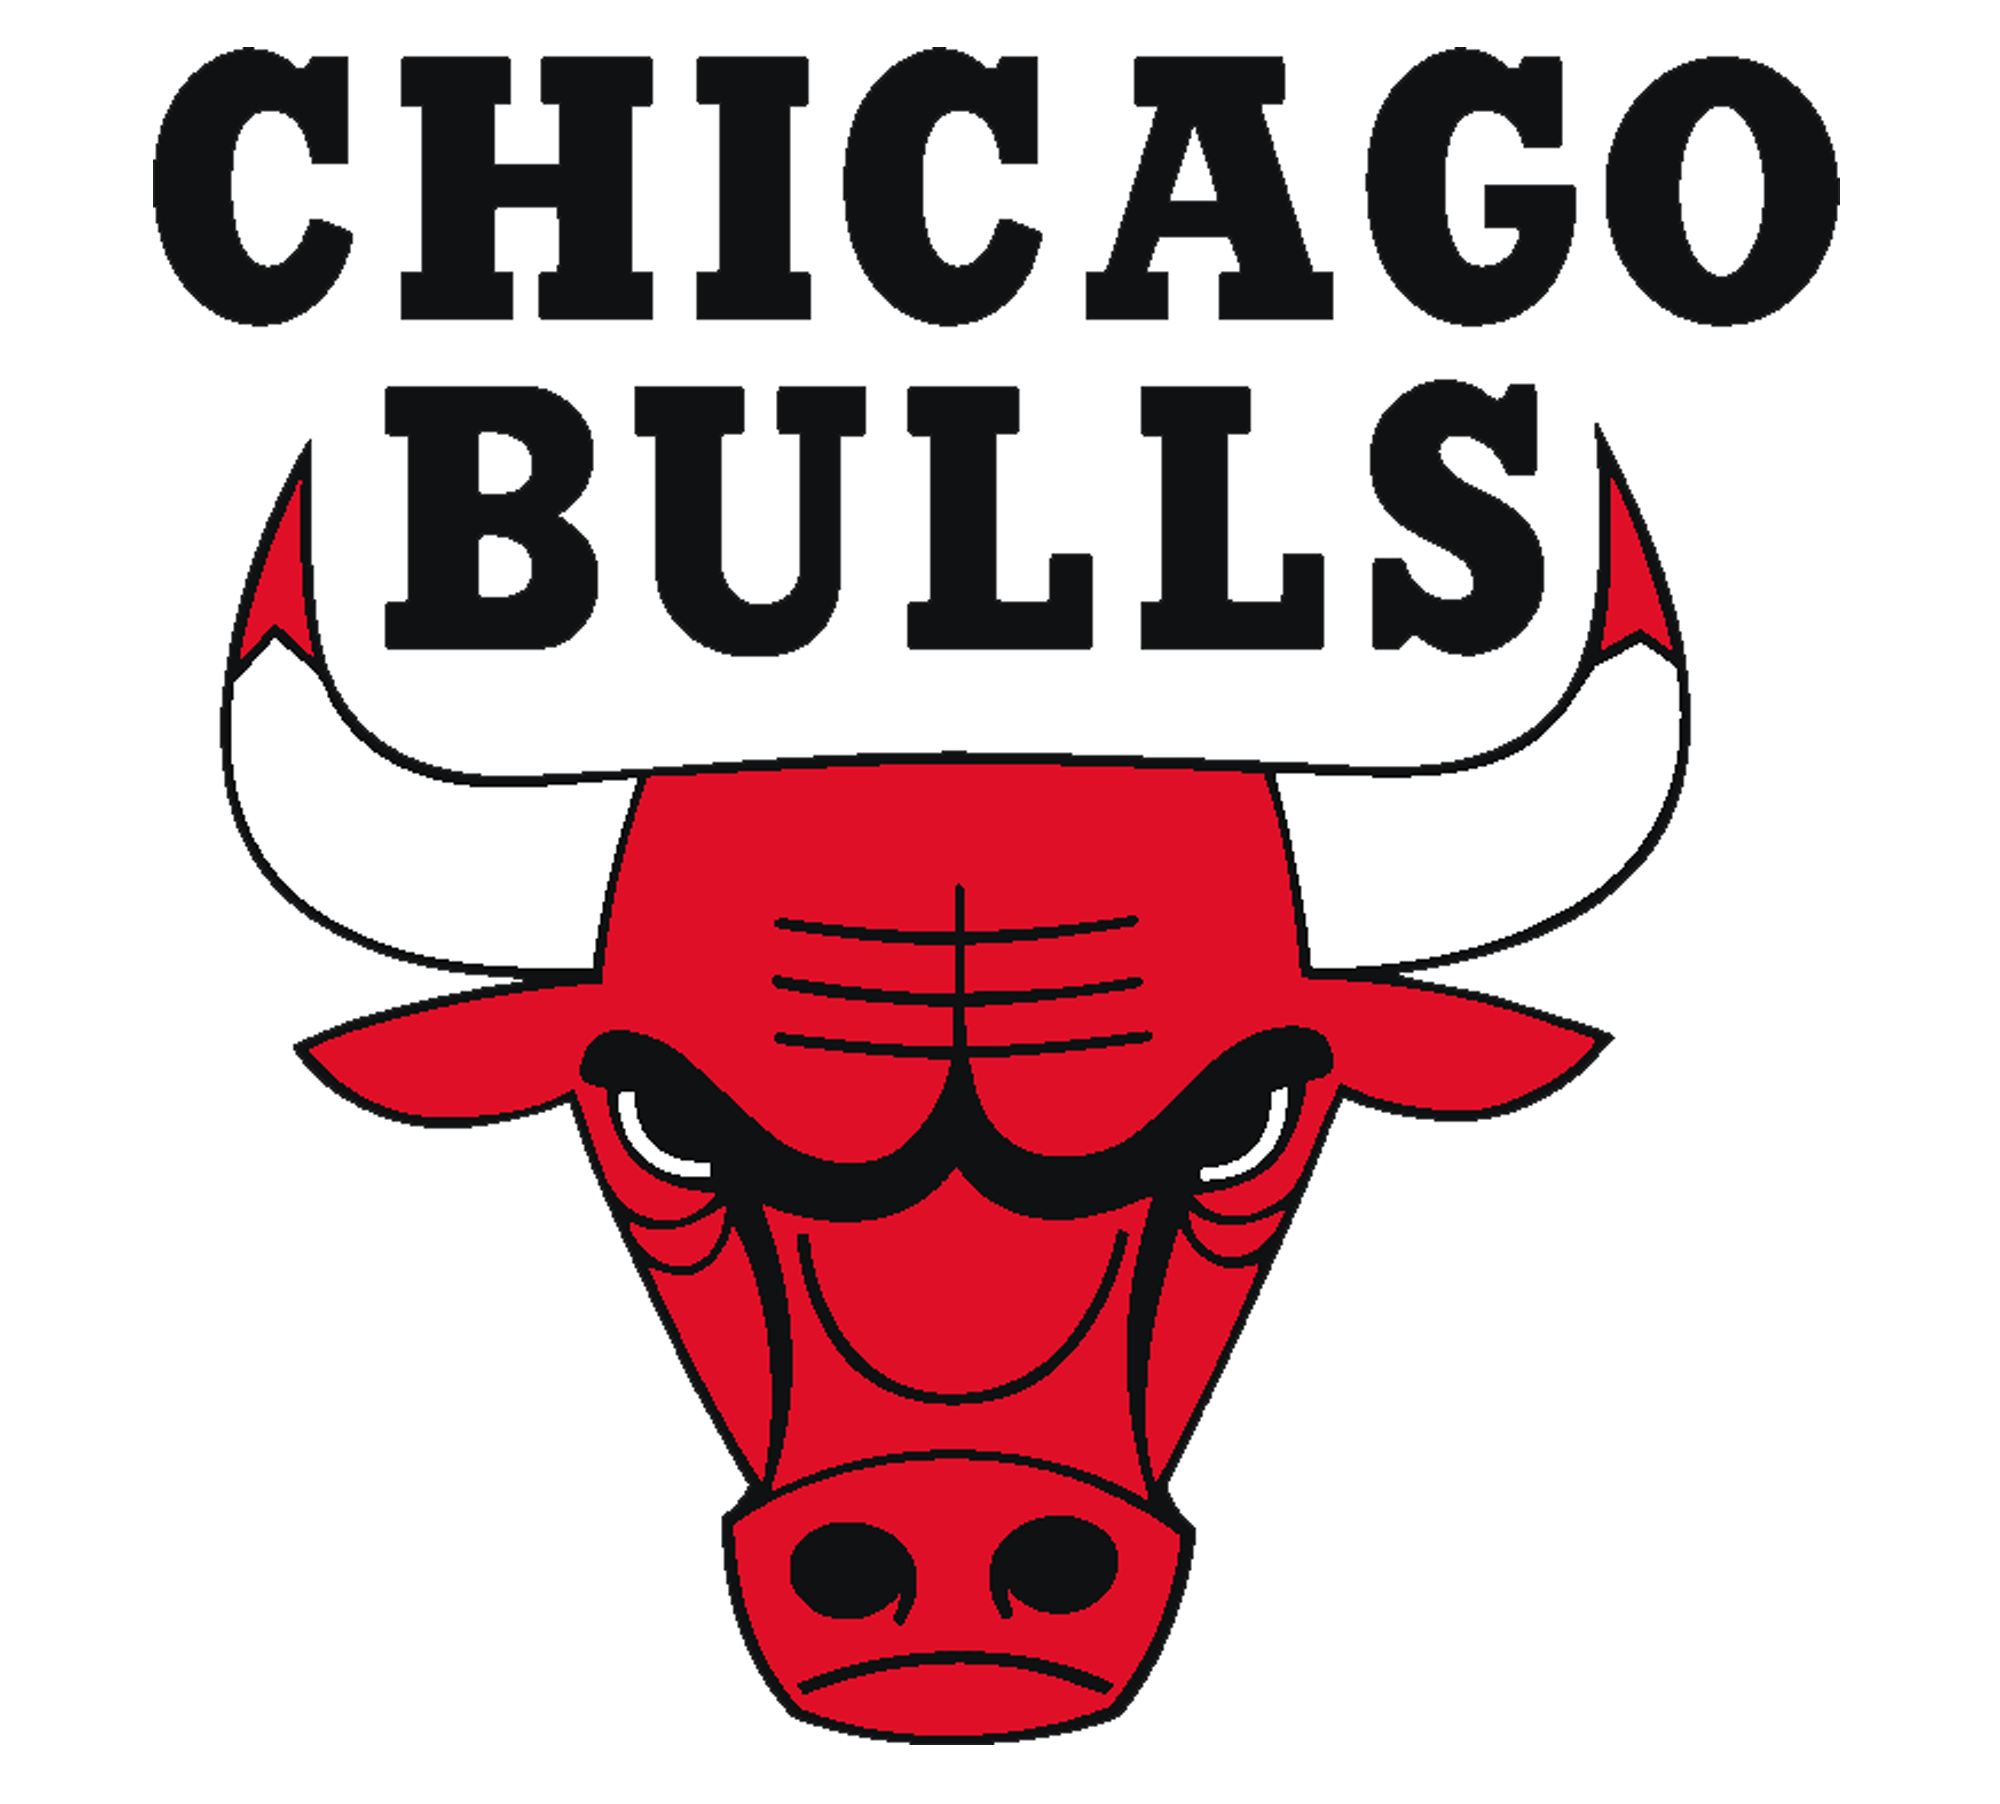 Bull Soccer Logo - Chicago Bulls Logo, Chicago Bulls Symbol Meaning, History and Evolution